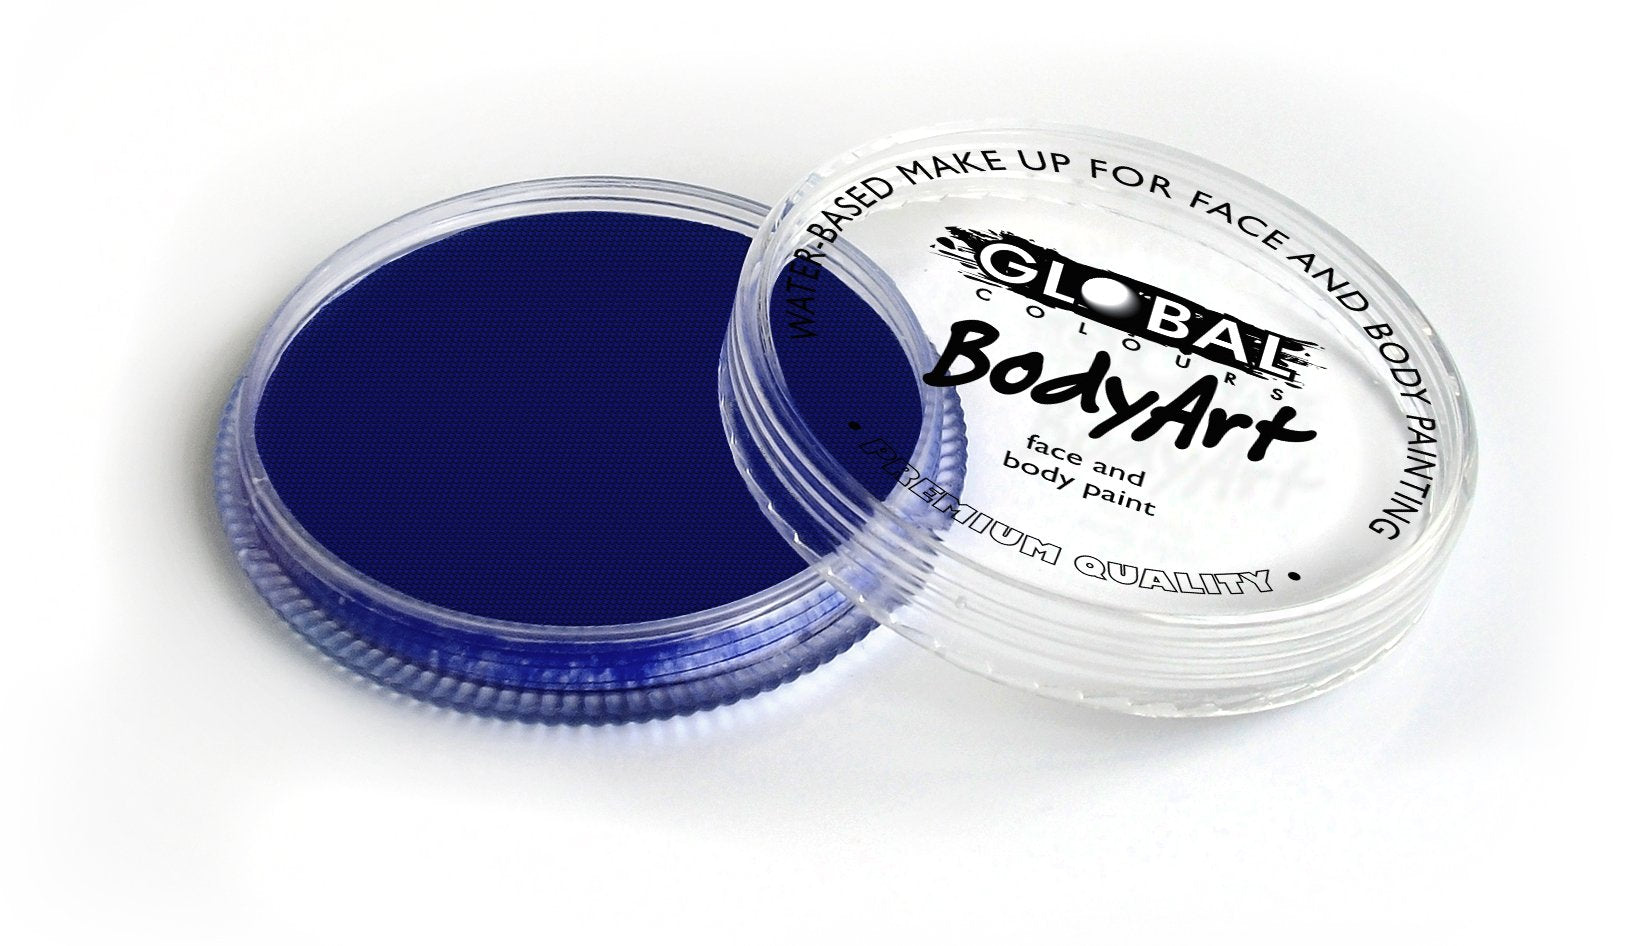 Face & Body Paint Bodyart Blue Dark Cake 32g